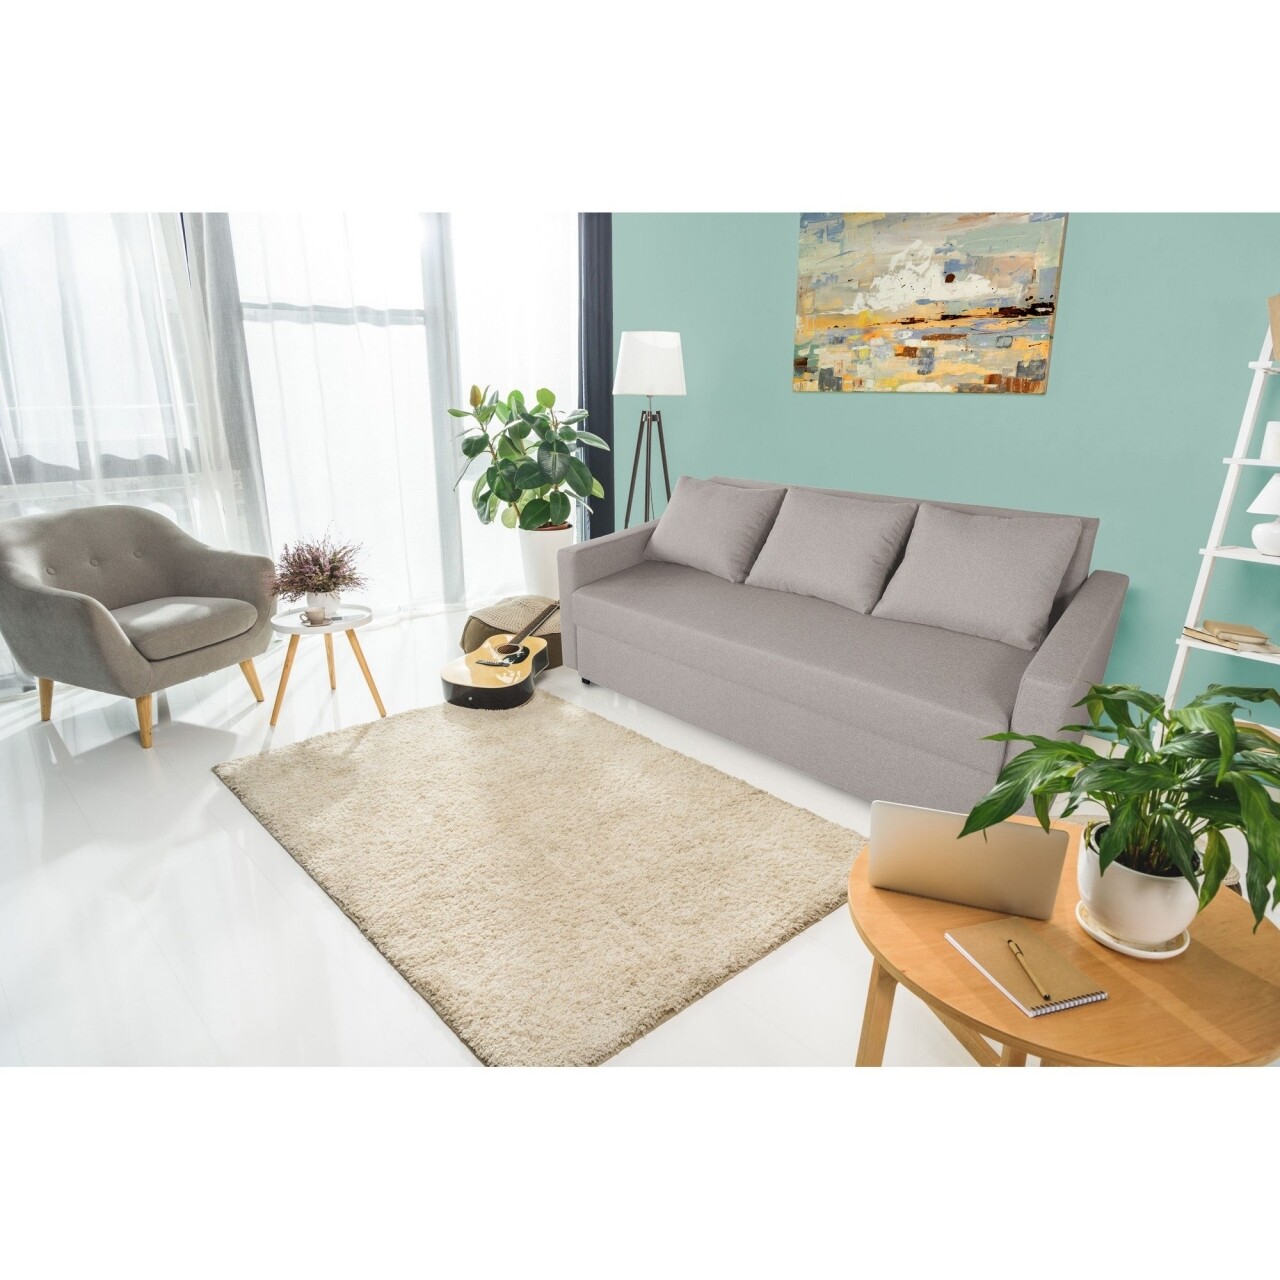 Firenze Kihúzható kanapé Beige 218x85x85cm tárolóládával